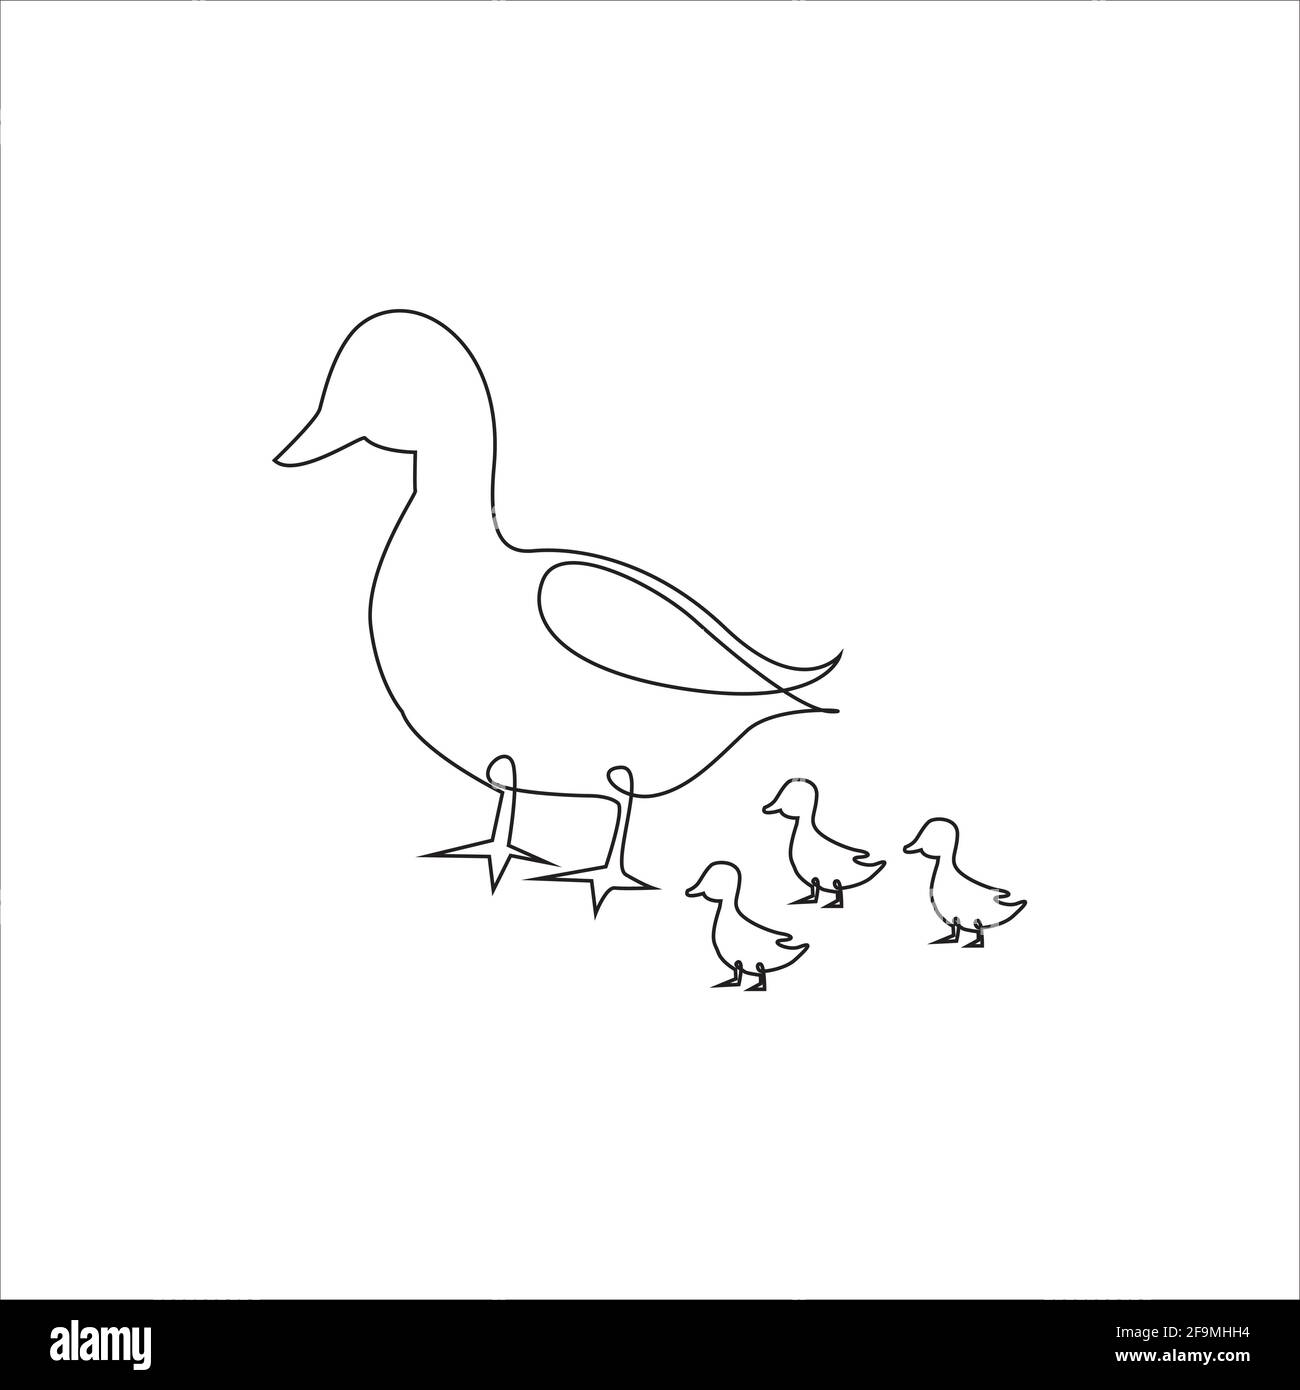 One Line Mother mit Baby Goose Icon. Strichzeichnung Tattoo. Bauernhof Vögel eine Linie Hand Zeichnung kontinuierlichen Kunstdruck, Vektor-Illustration. Frei, einfach, lin Stock Vektor